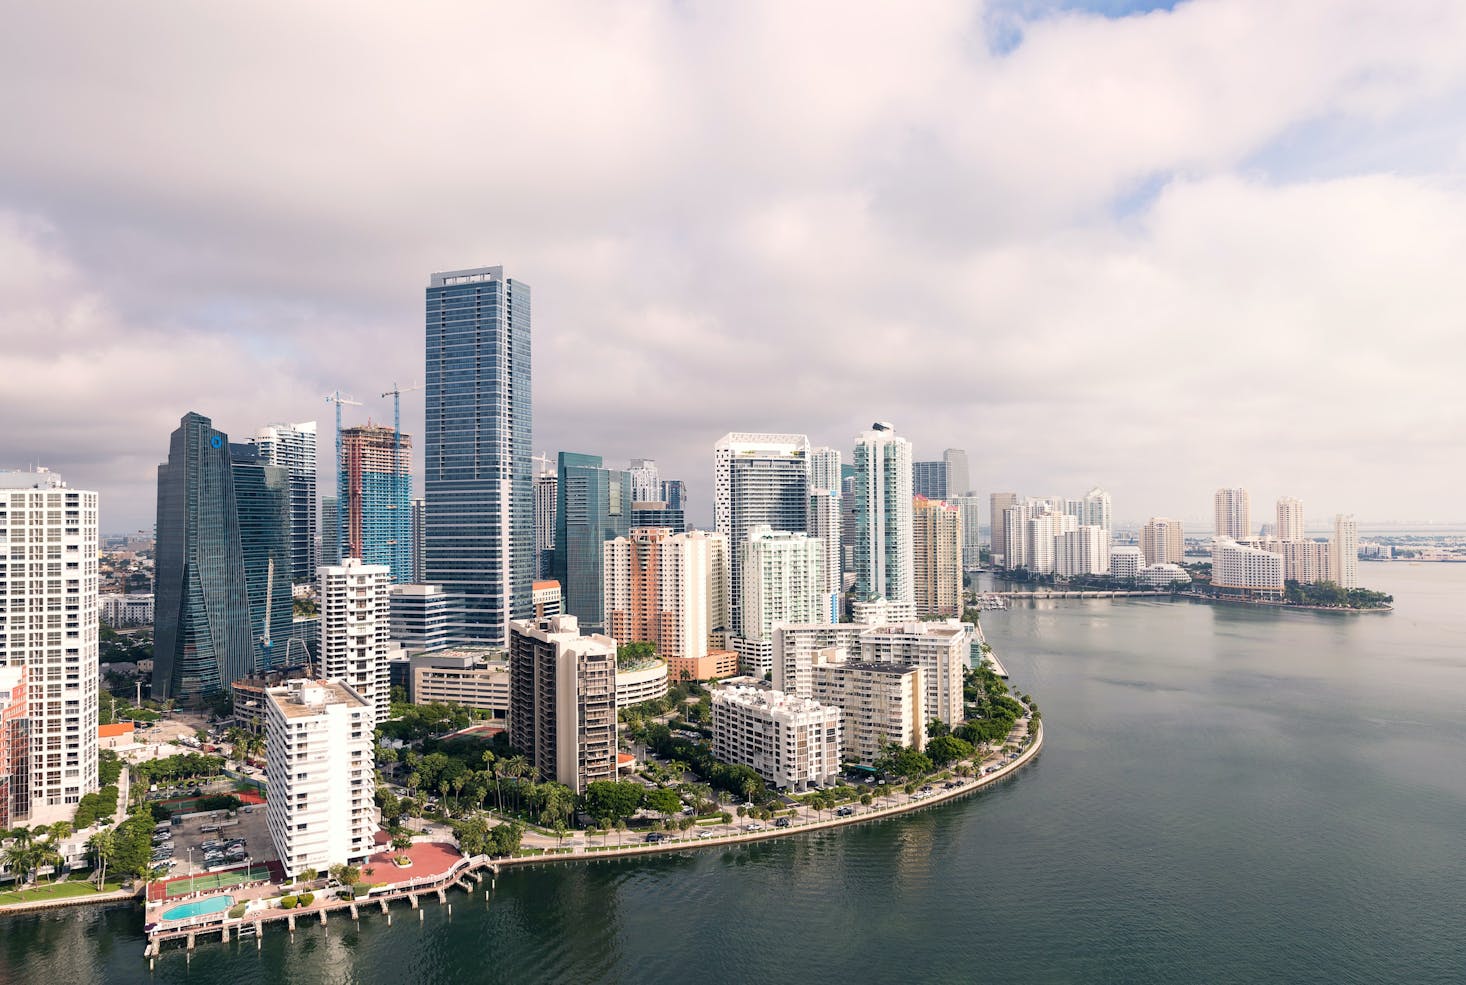 Skyscrapers in Miami, Florida